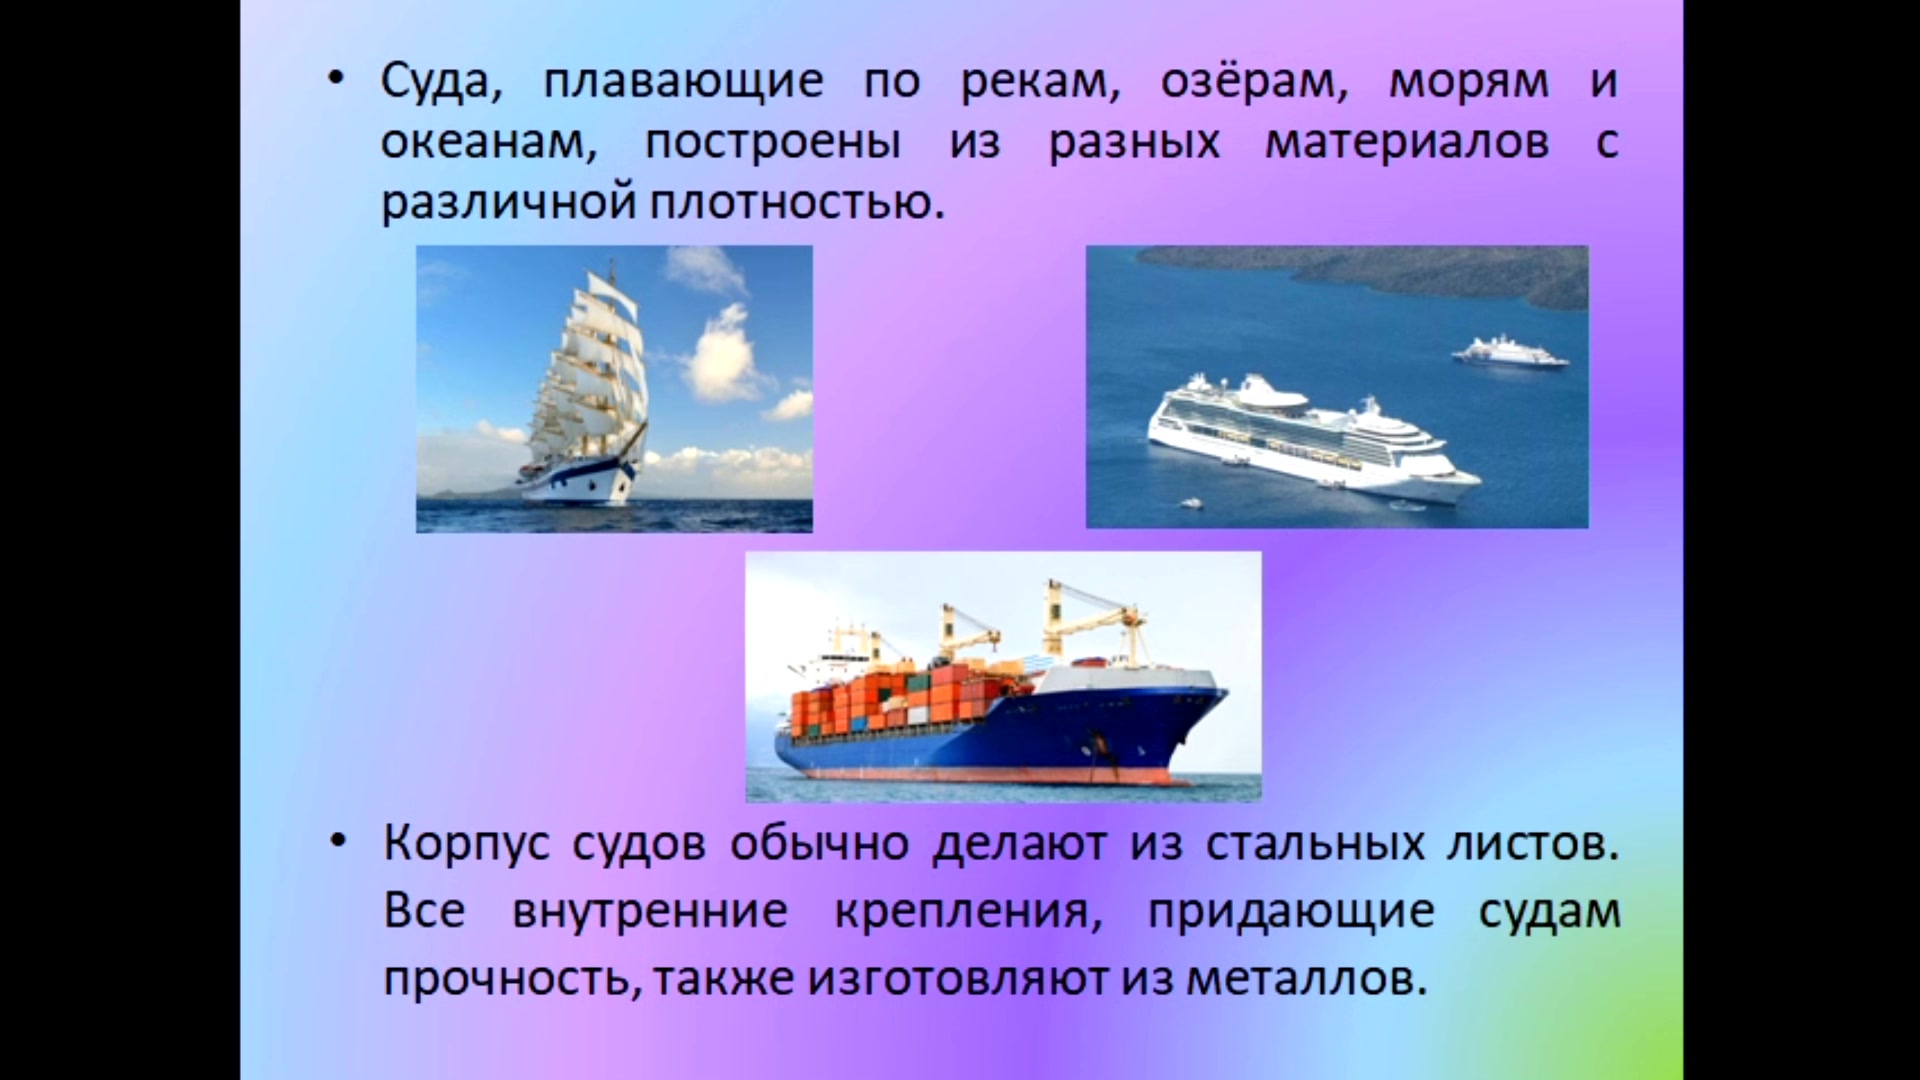 Тест плавание судов воздухоплавание 7 класс. Плавание судов воздухоплавание физика 7 класс. Презентация по физике плавание судов. Плавание тел плавание судов. Плавание тел воздухоплавание 7 класс физика.